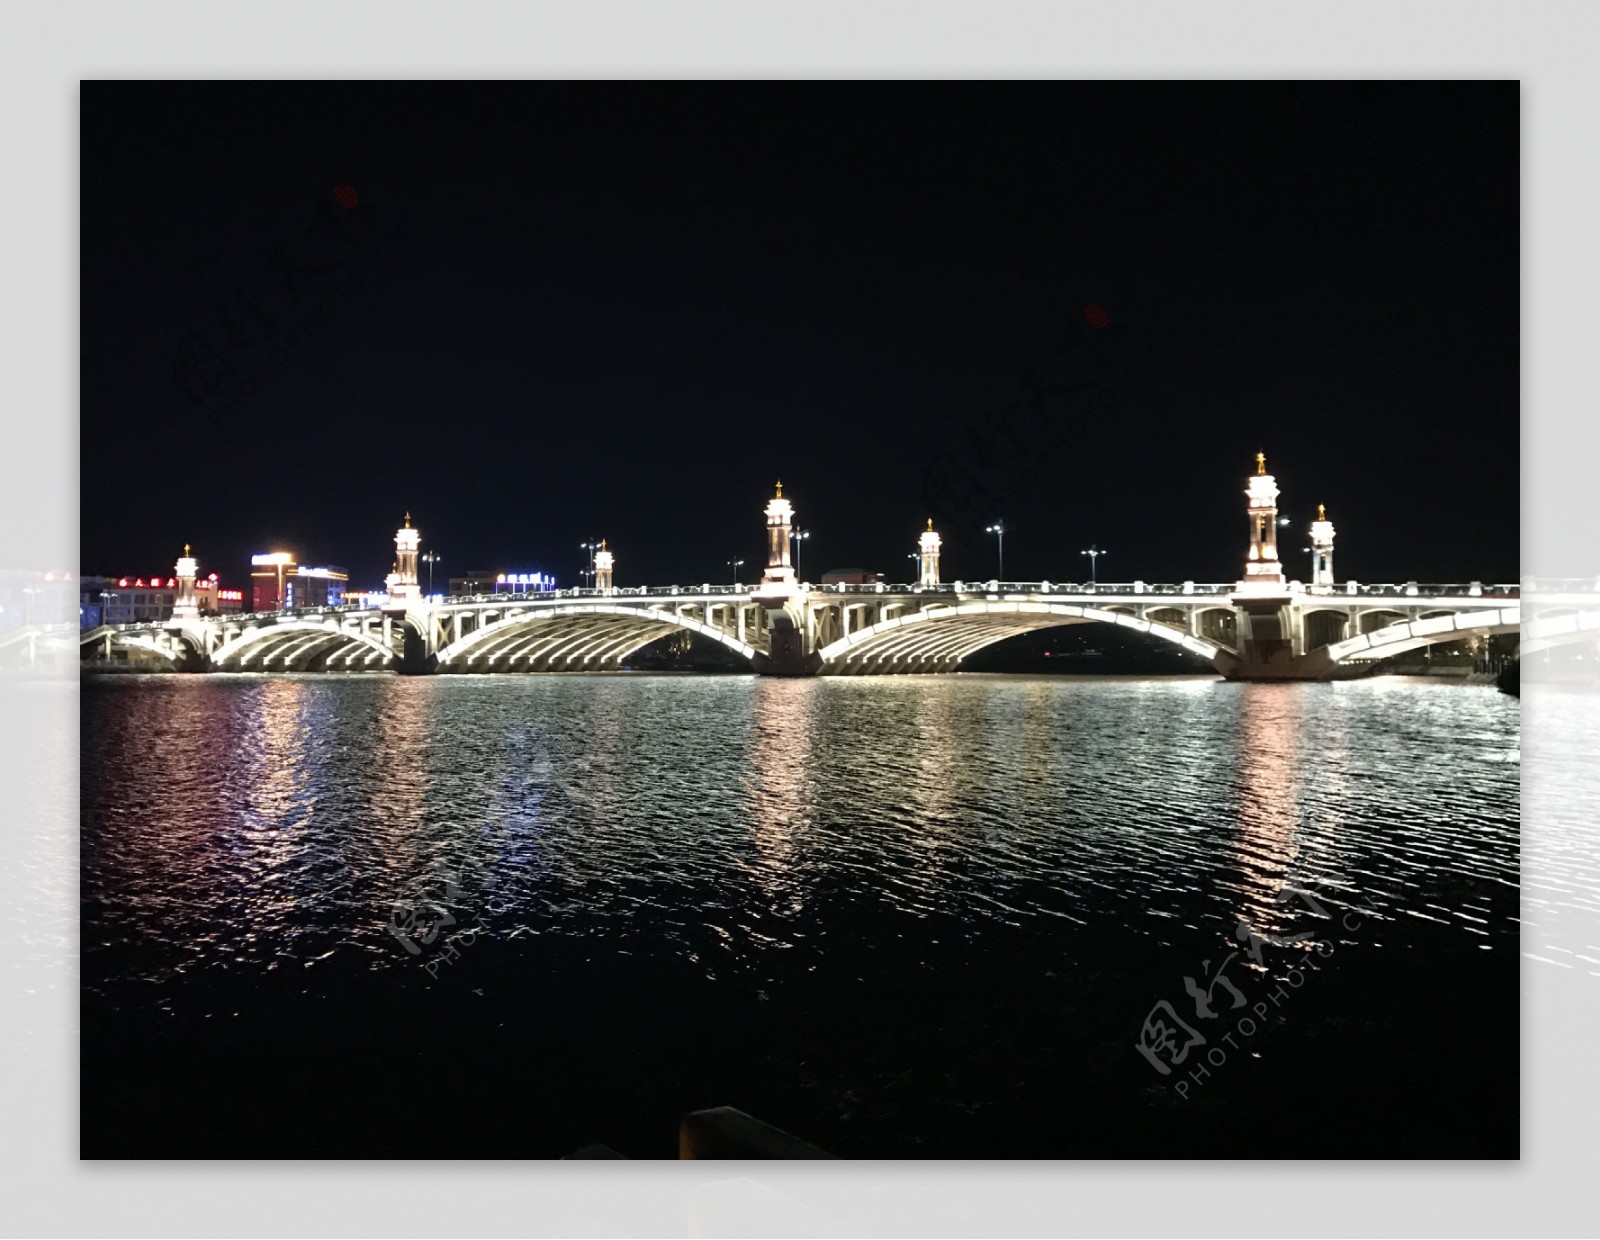 兴盛桥夜景